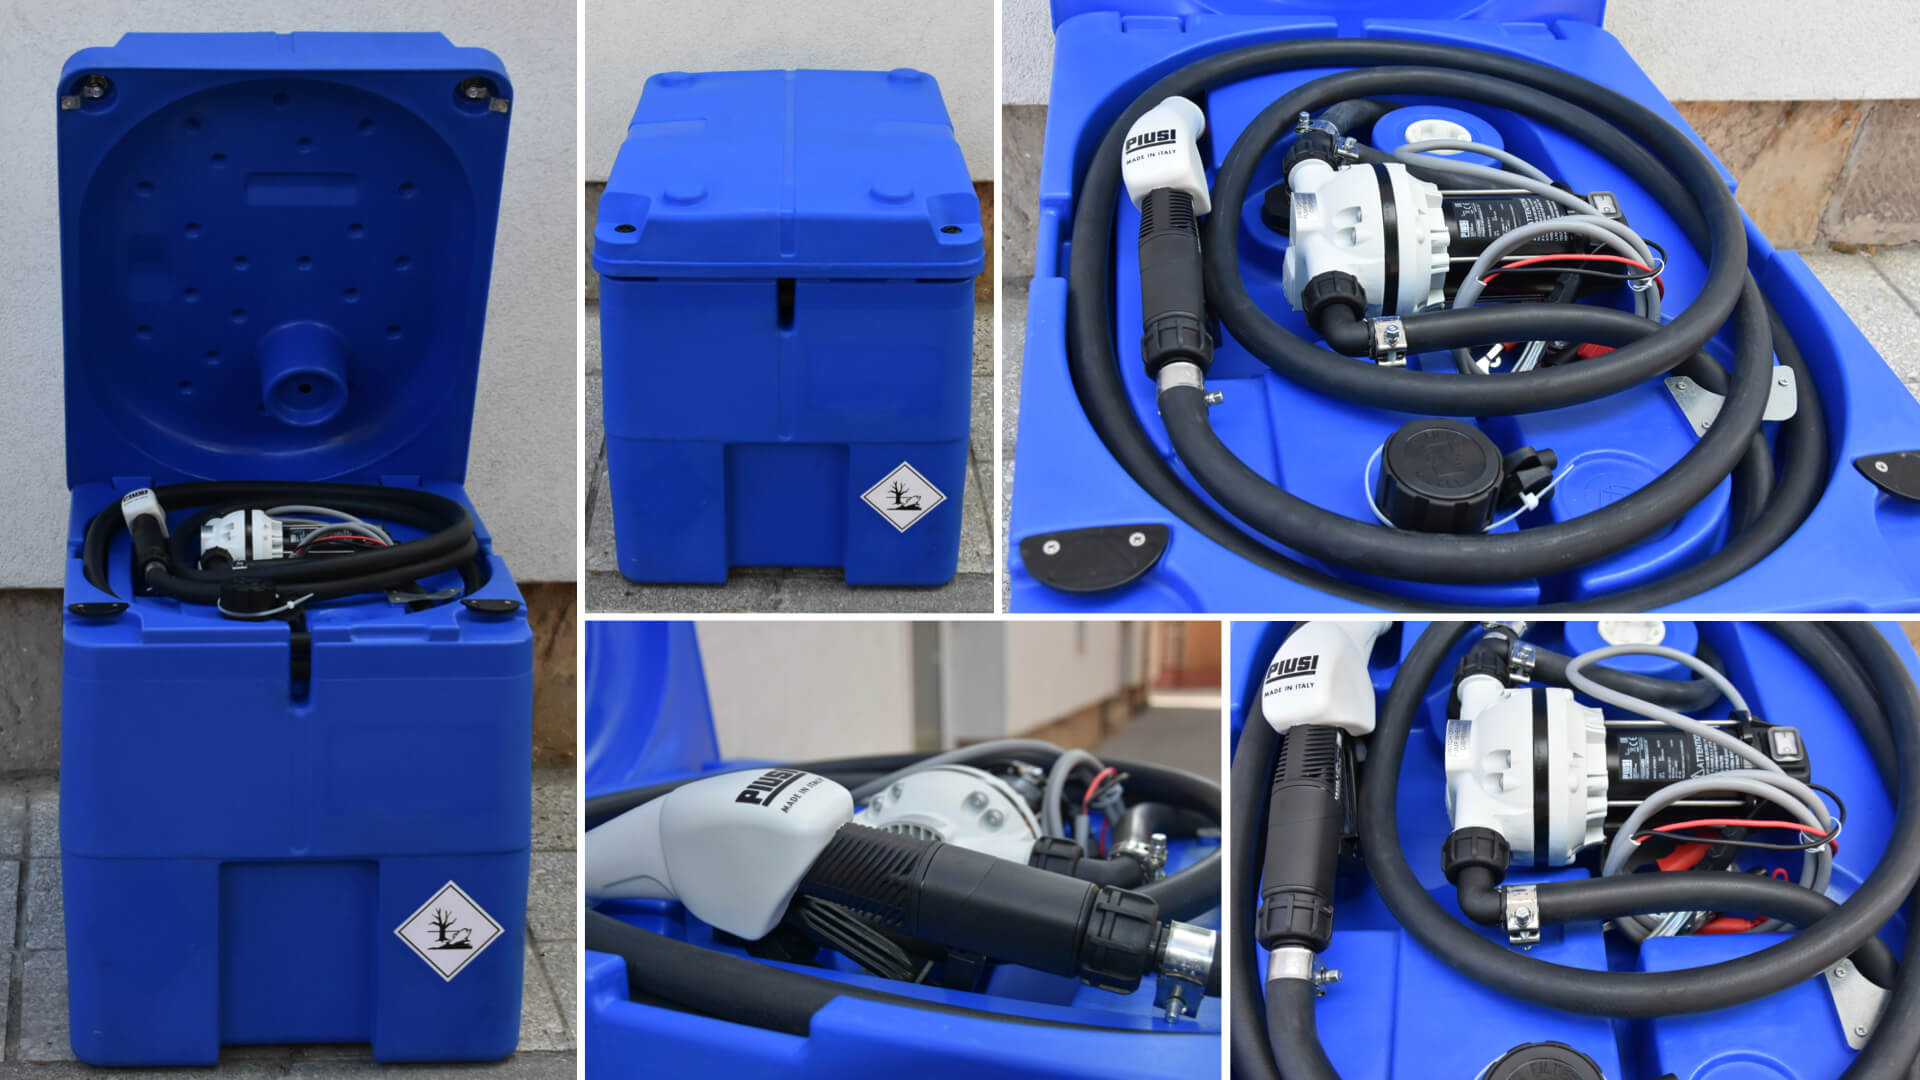 adblue tartaly szallitható tartály, kék színben, 230 literes műanyag tartály